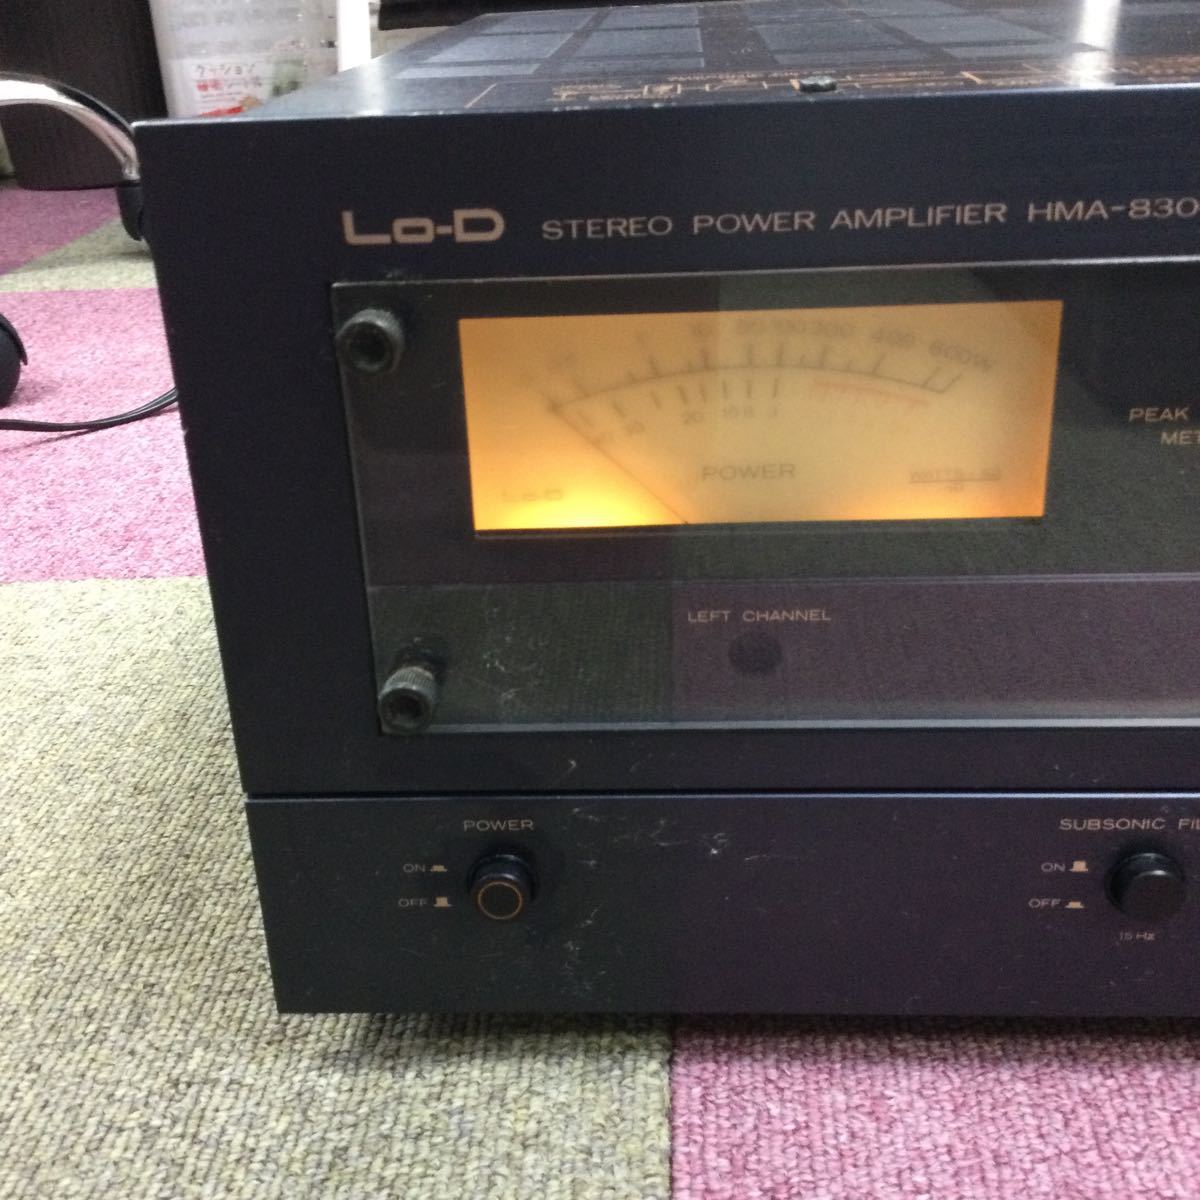 t【Lo-D】オーディオ機器 パワーアンプ STEREO POWER AMPLIFIER HMA-8300 ローディ 音響機器 通電確認のみ 汚れ有り 現状品 保管品 _画像2